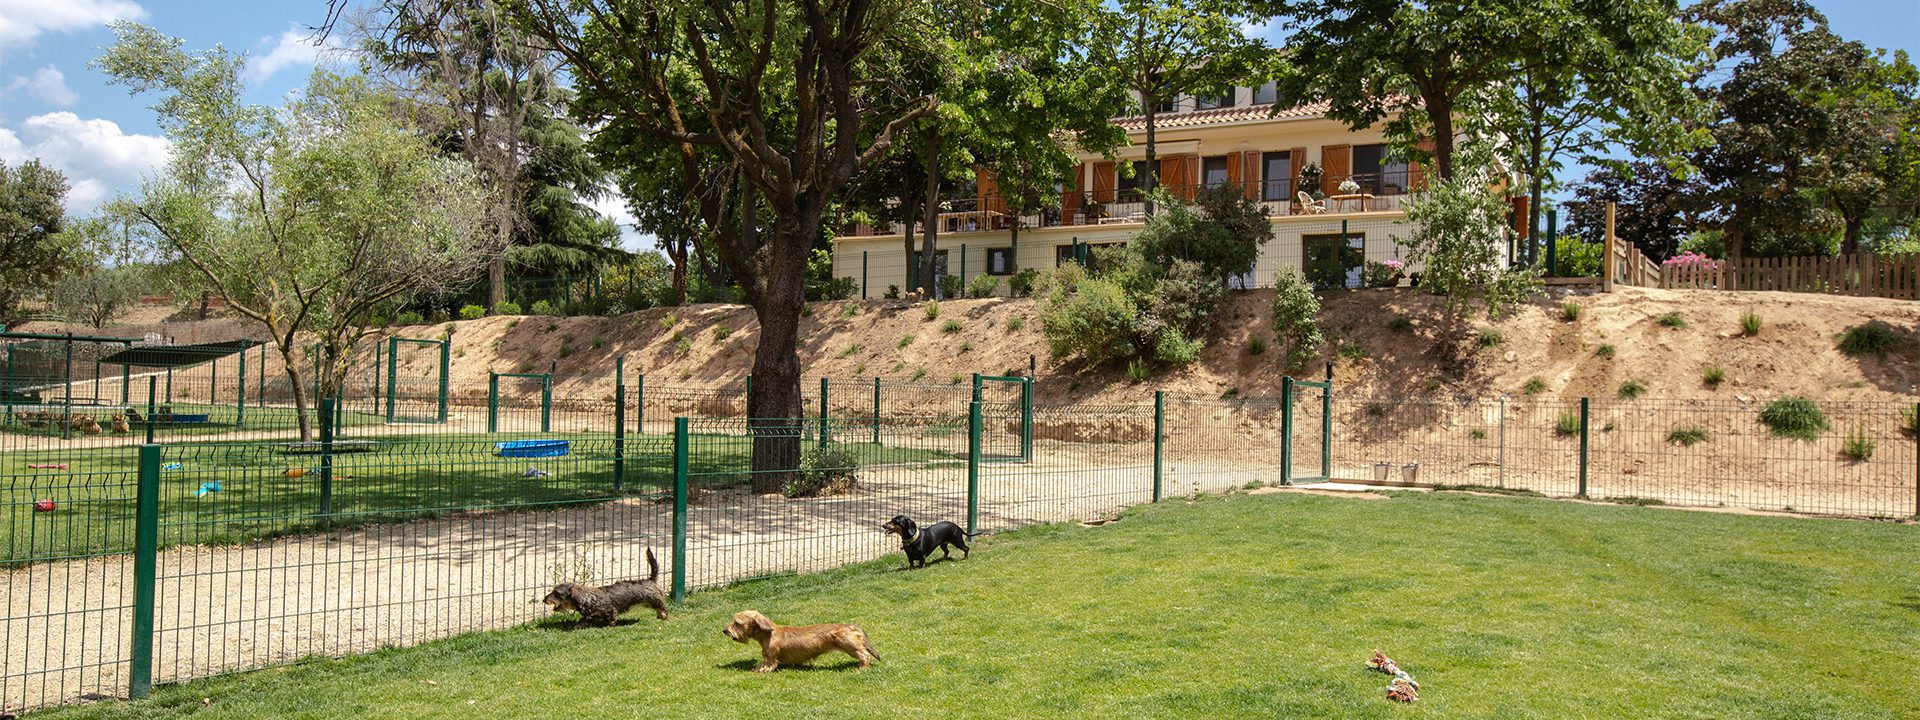 Perros jugando en el jardin - Instalaciones - Galeria Dondersteen Resort Foto 13